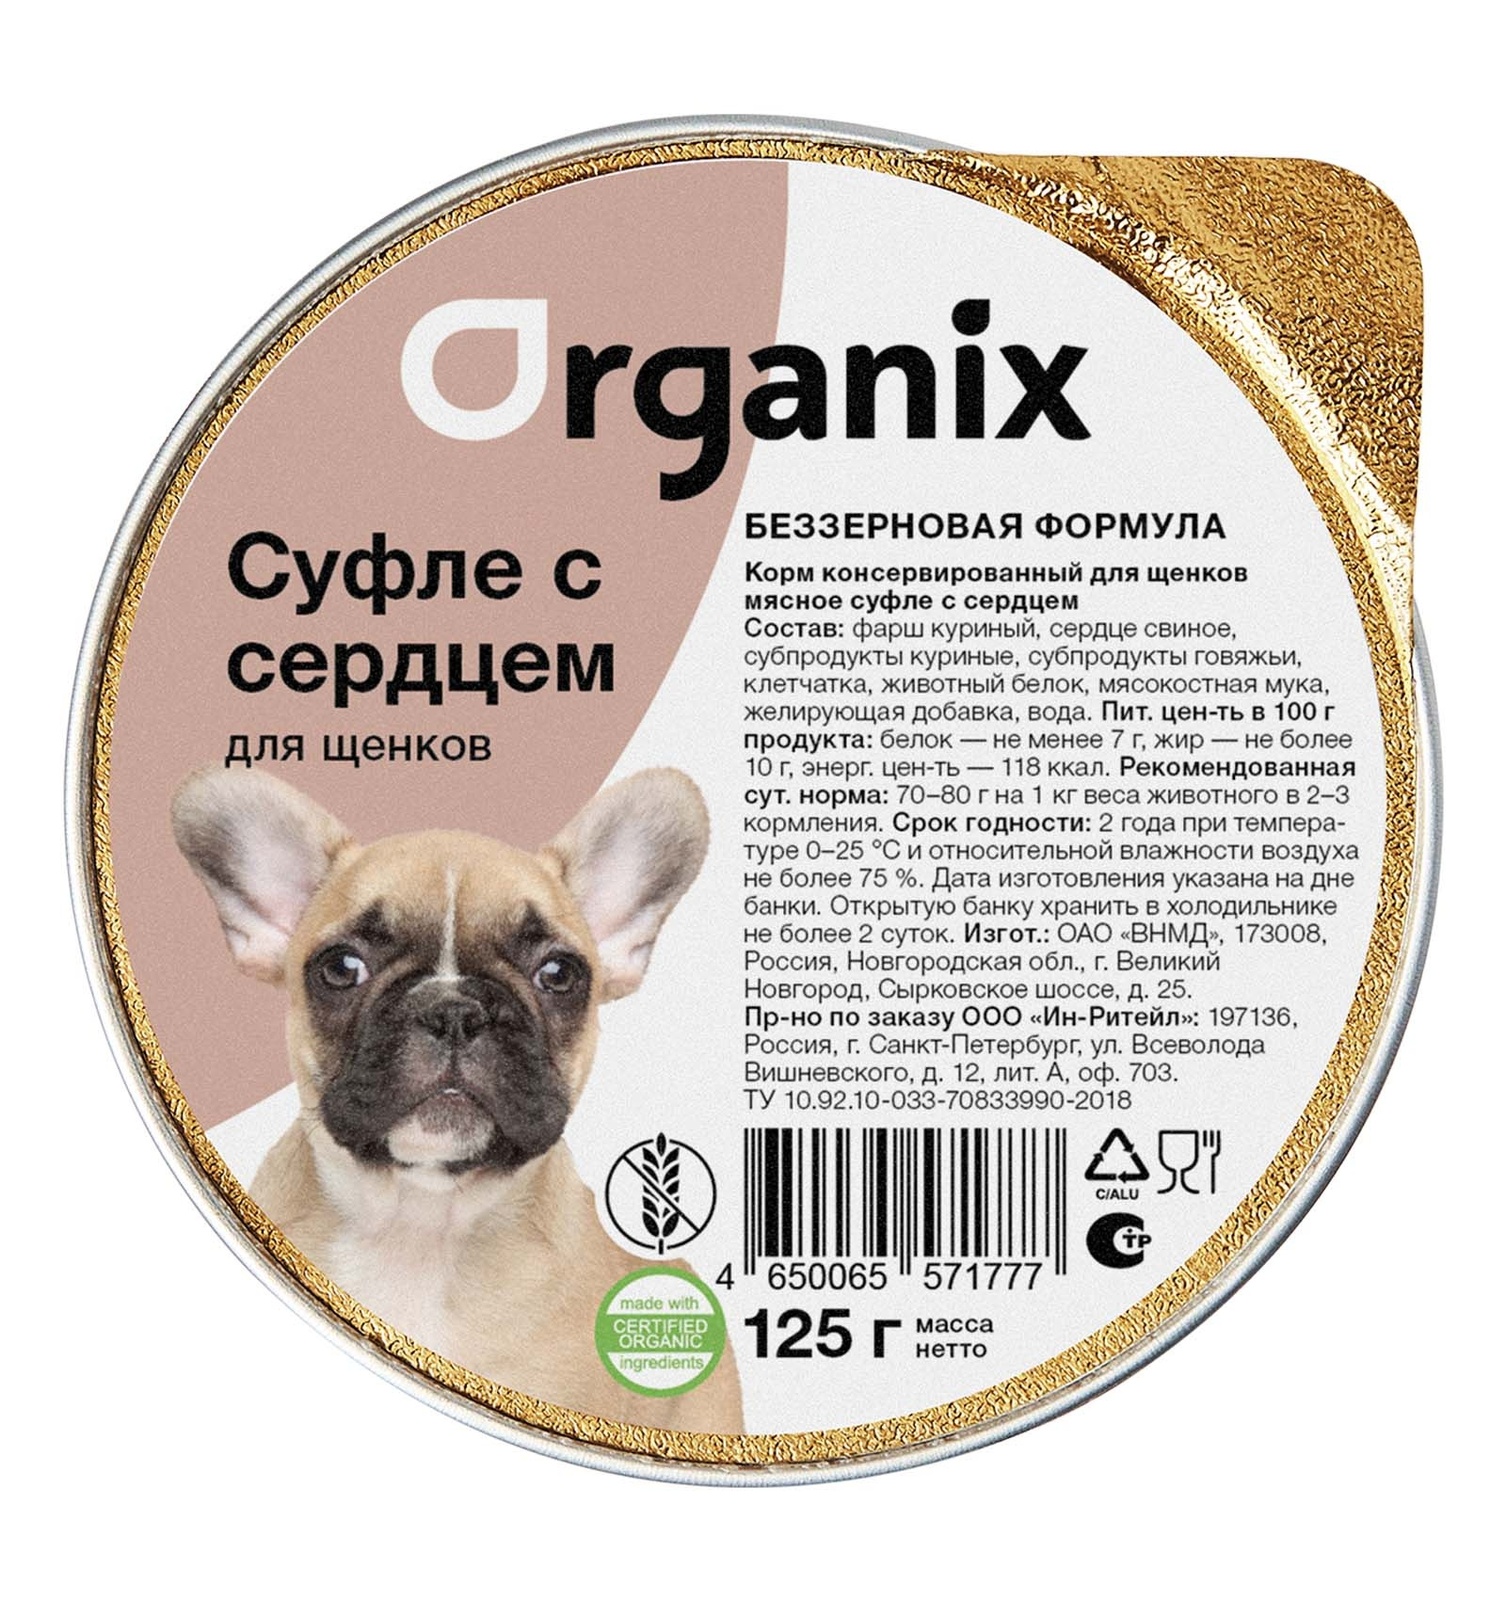 Organix консервы Organix мясное суфле с сердцем для щенков (125 г) organix мясное суфле для щенков с ягненком 125 гр х 16 шт